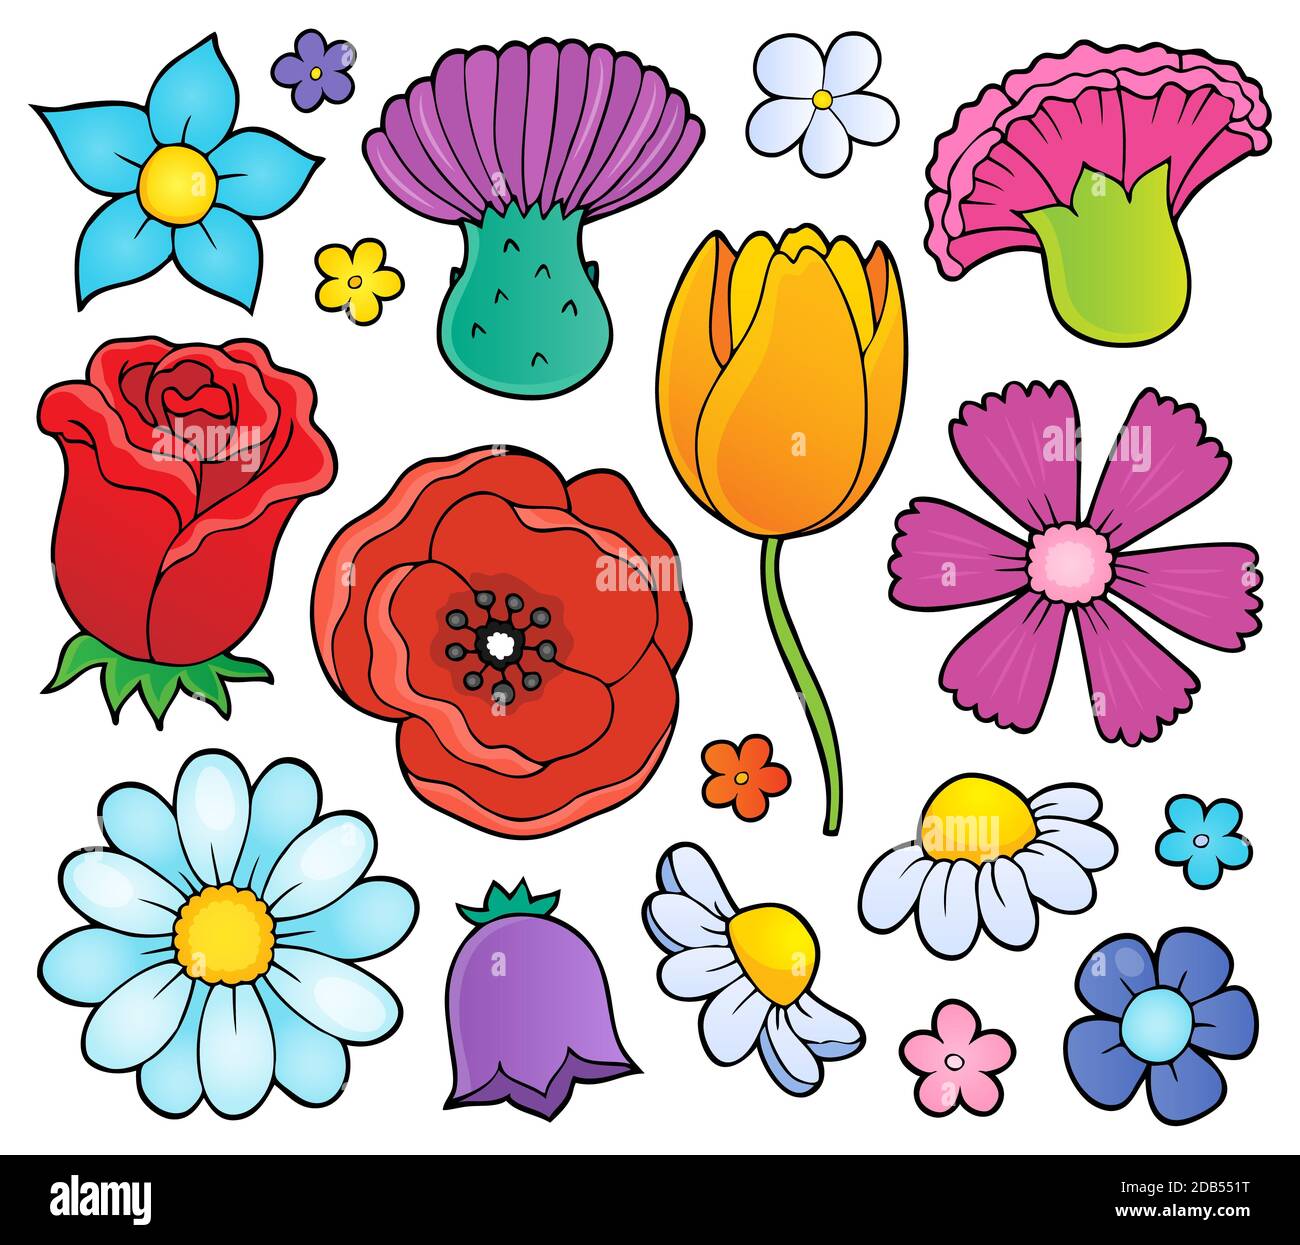 Estamos Chegando a Imagem Escrita De Teste Ao Vivo Com Design Floral  Ilustração Stock - Ilustração de arte, escrito: 211868036